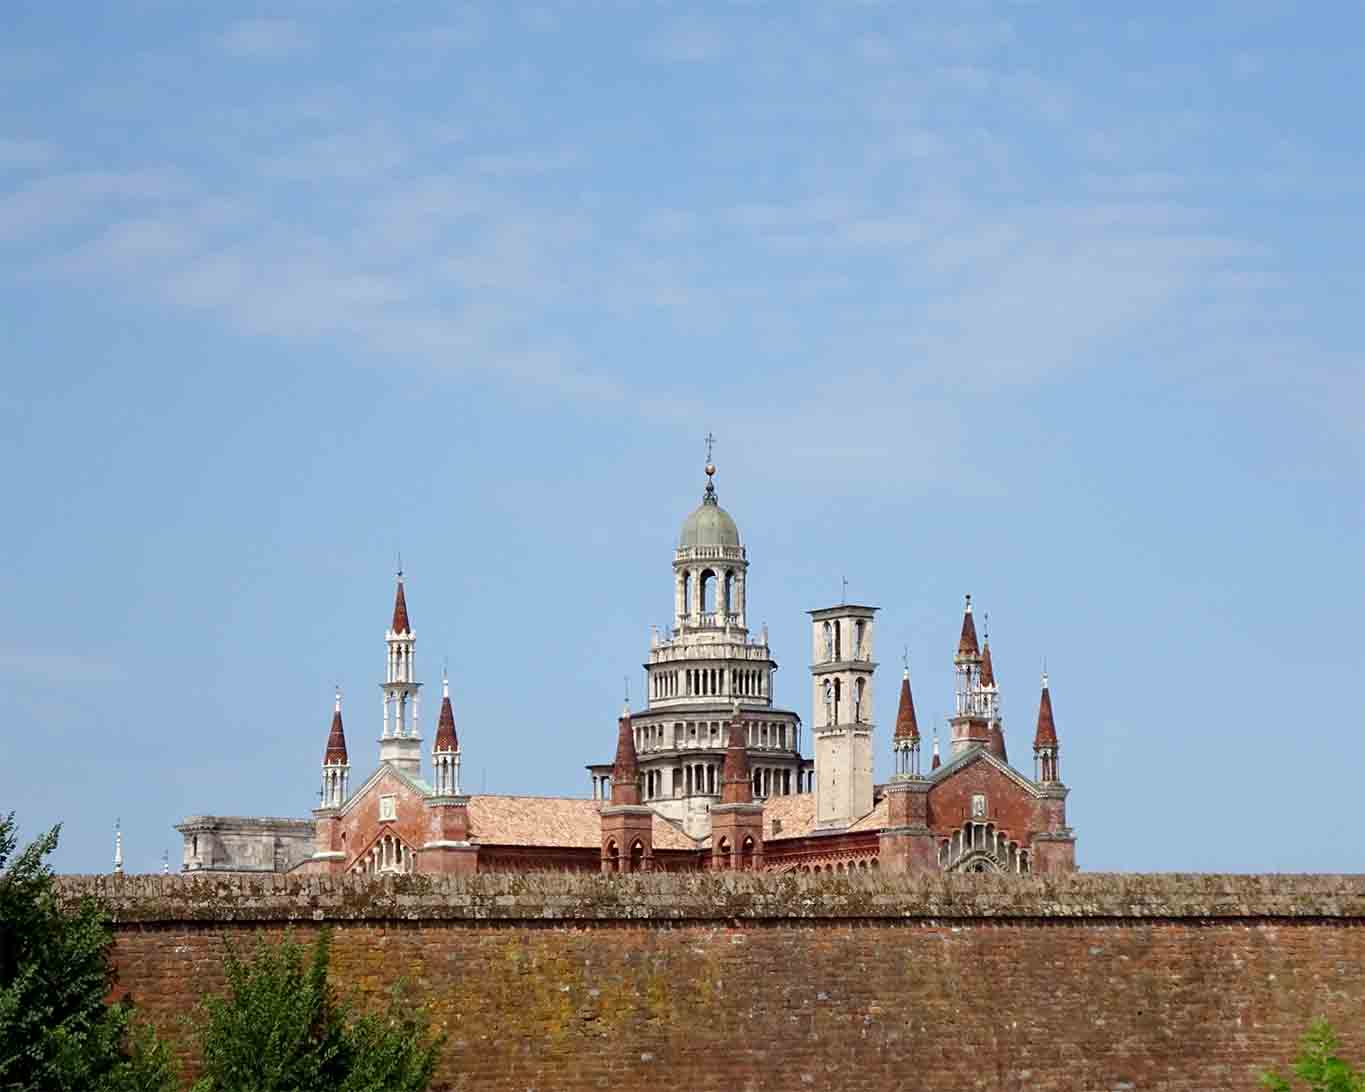 Wie eine Stein gewordene Hochzeitstorte beeindruckt die Certosa di Pavia mit ihrer Pracht.